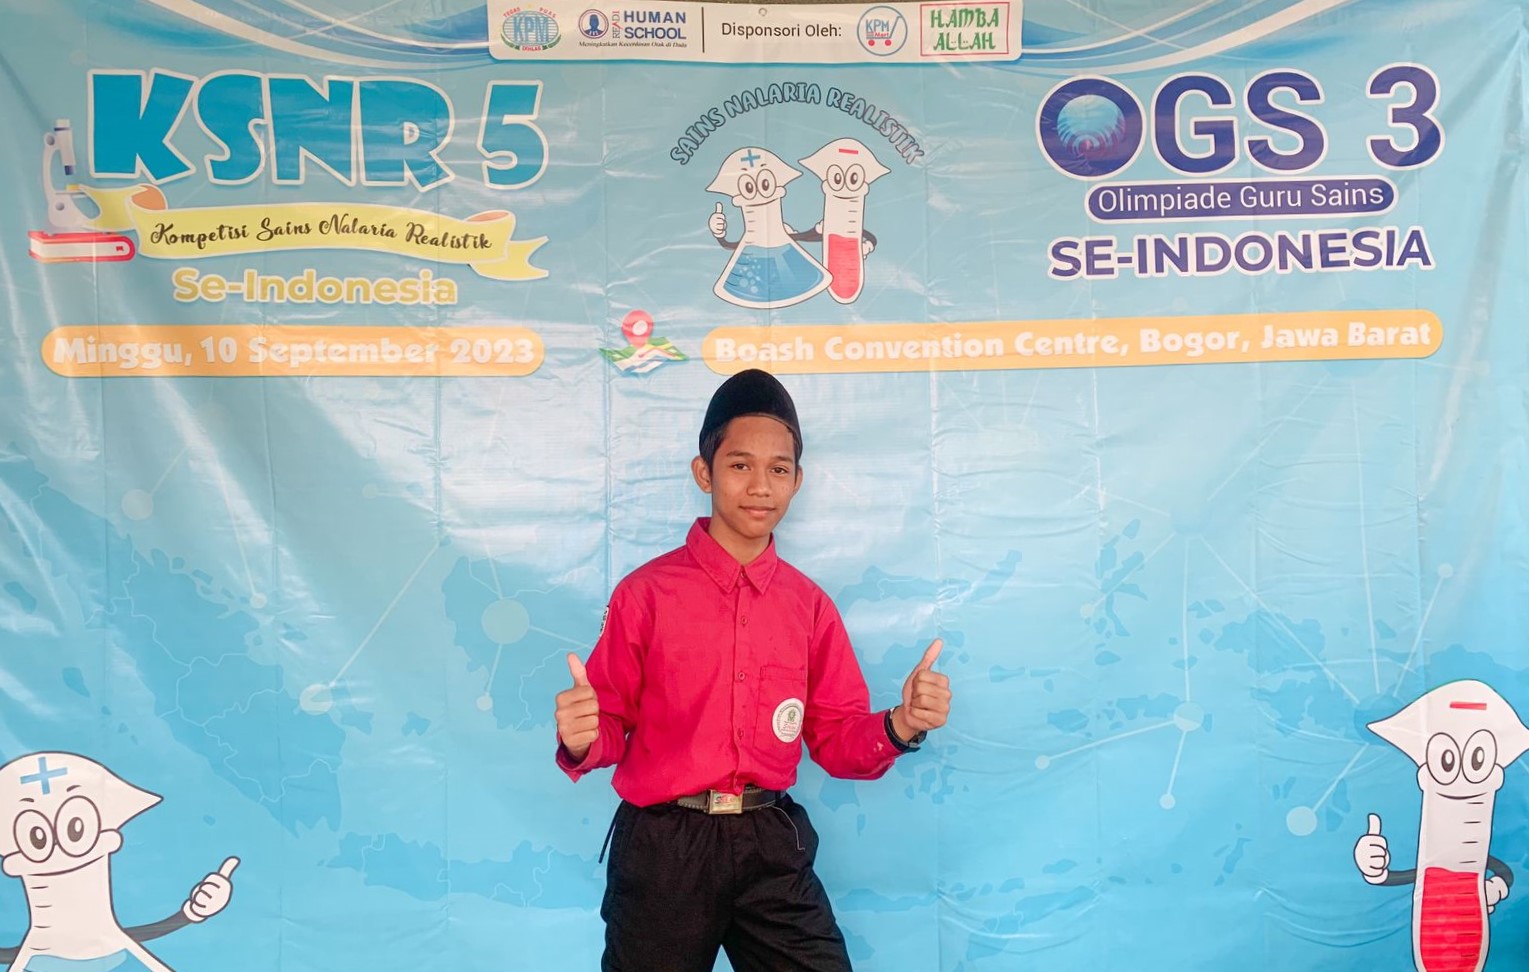 Kompetisi Sains Nalaria Realistik, Santri Pondok Pesantren SPEAM Raih Juara Perunggu